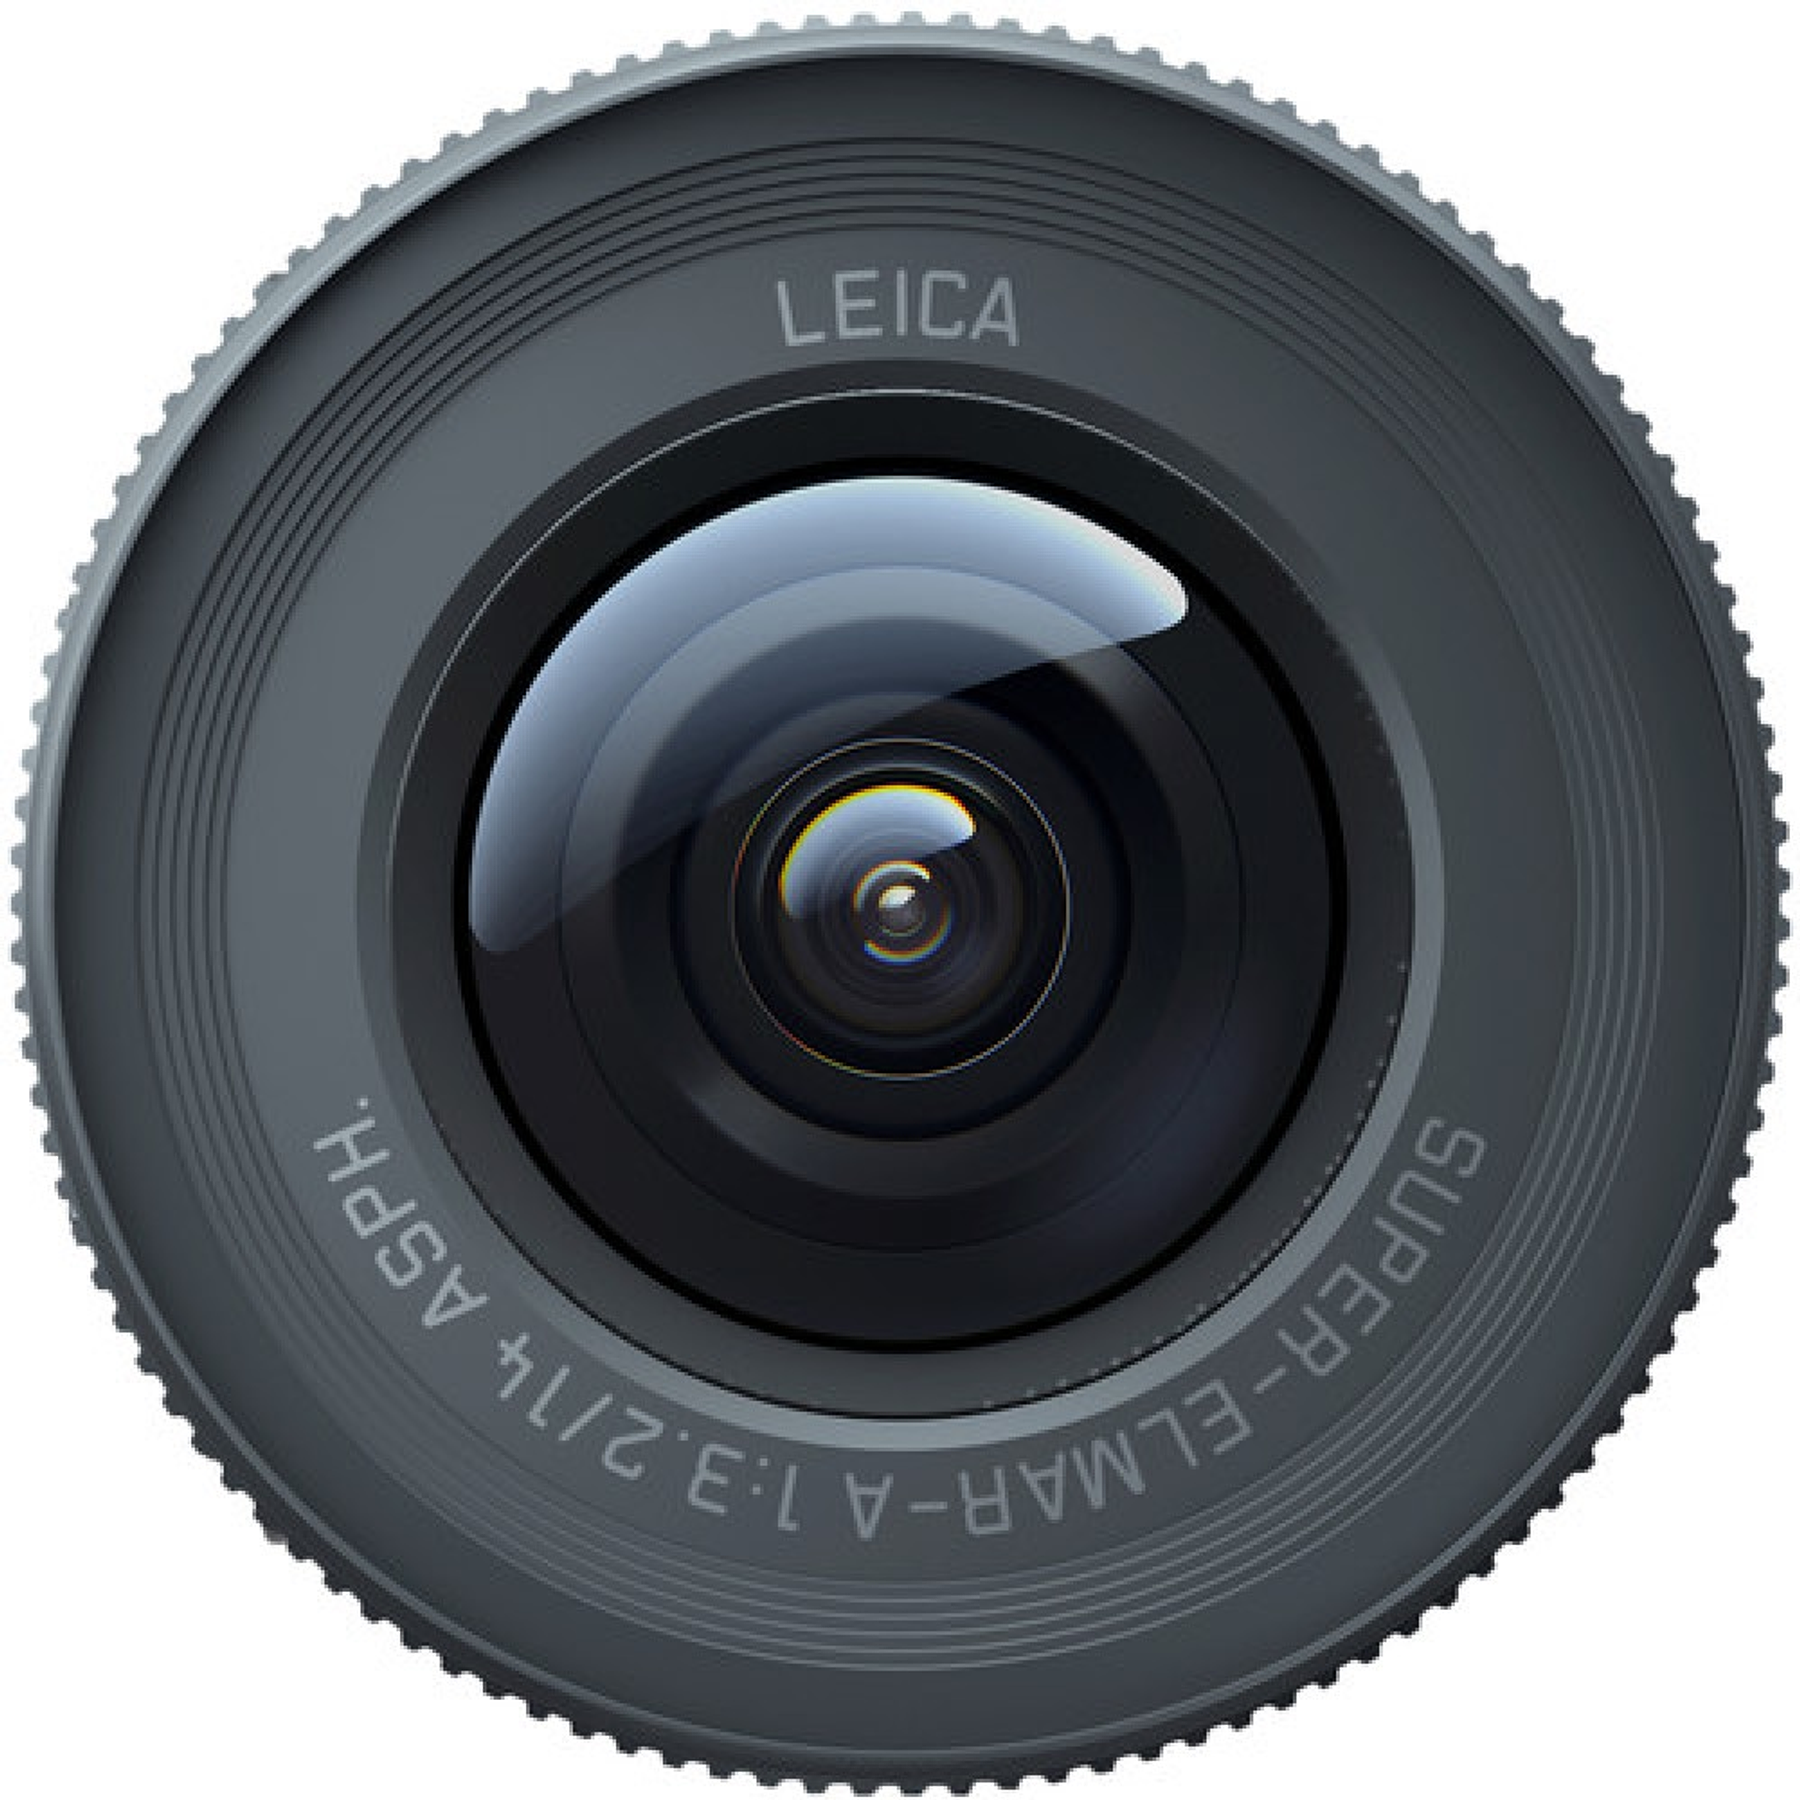 Insta360 One R 1-inch Leica Mod